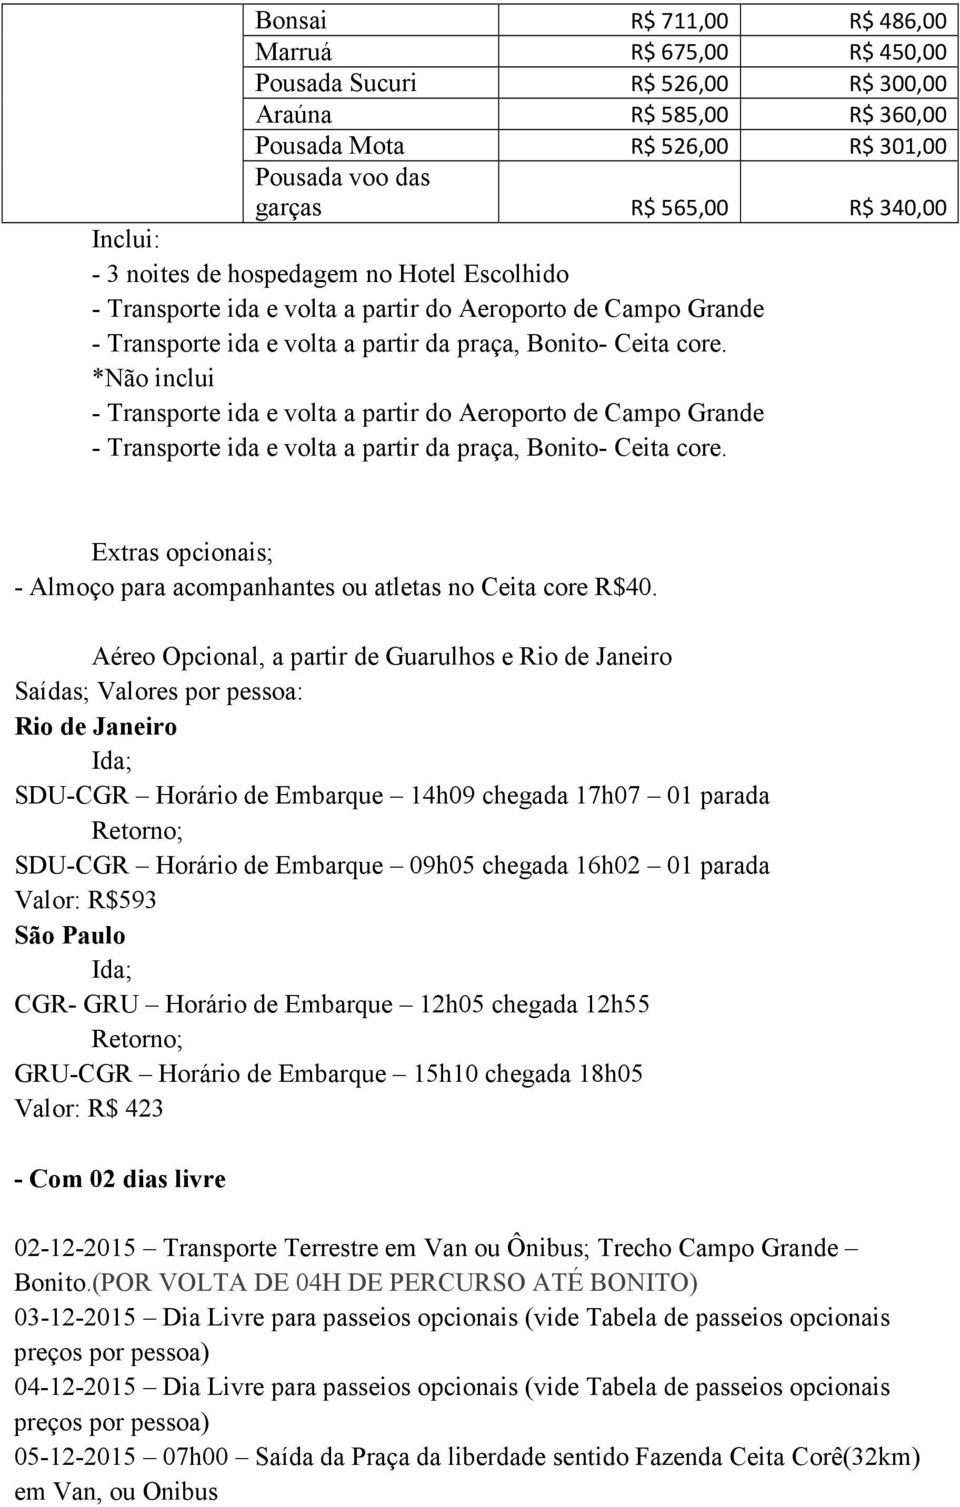 Aéreo Opcional, a partir de Guarulhos e Rio de Janeiro Saídas; Valores por pessoa: Rio de Janeiro SDU-CGR Horário de Embarque 14h09 chegada 17h07 01 parada SDU-CGR Horário de Embarque 09h05 chegada